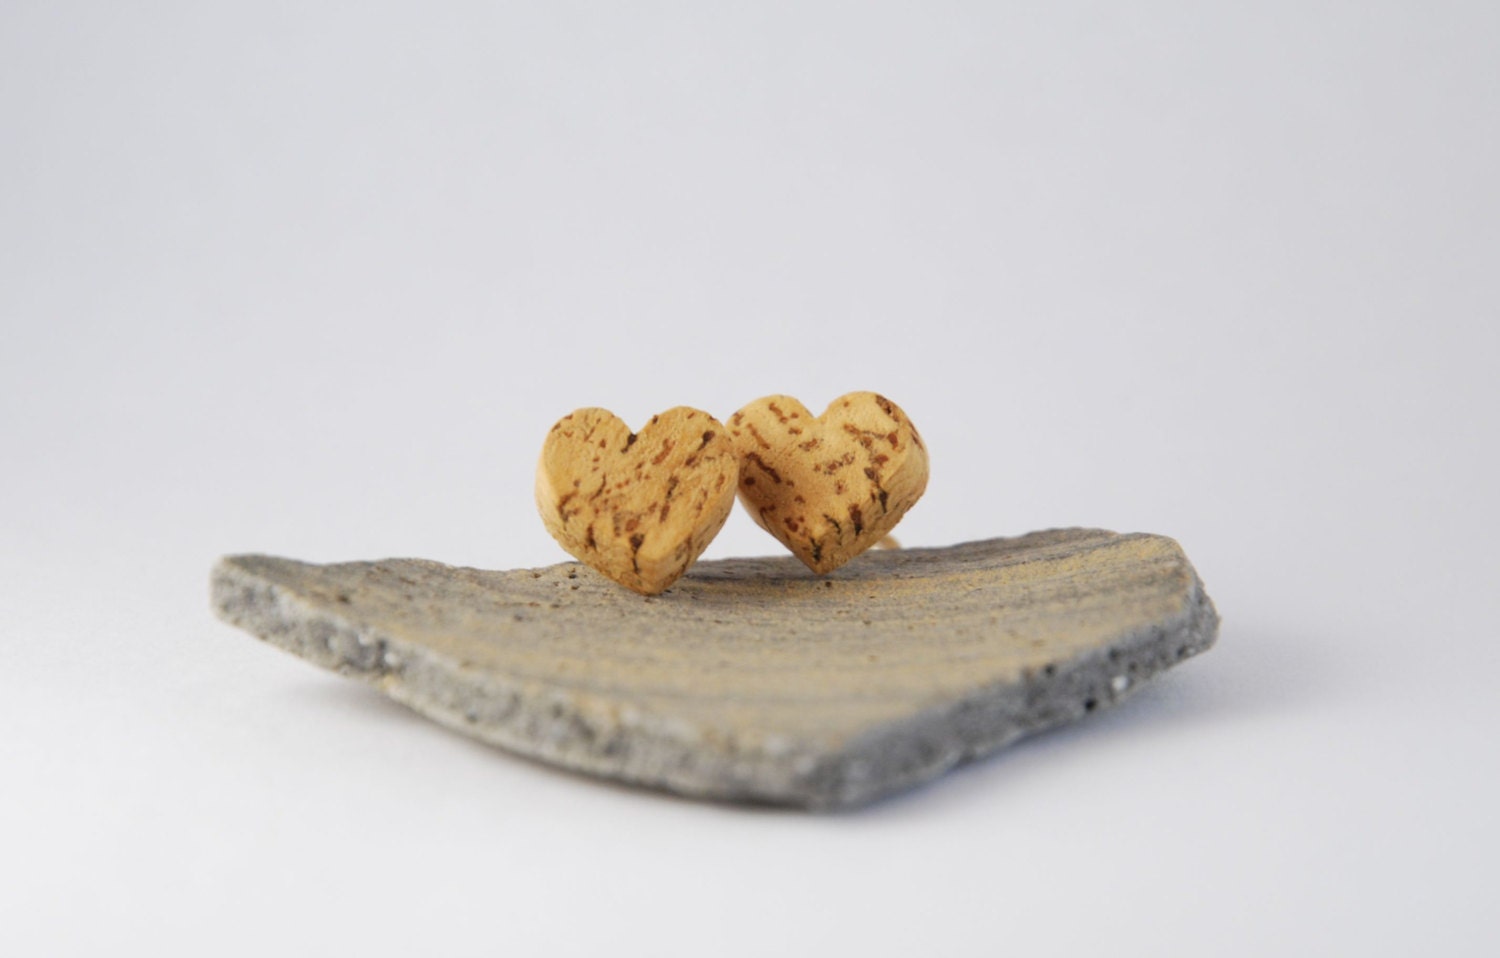 Valentines day gift - Wine cork heart earrings â�� Ecofriendly upcycled earrings â�� Wine cork crafts â�� Heart shaped earrings - Wooden earring - BalanceAtelier